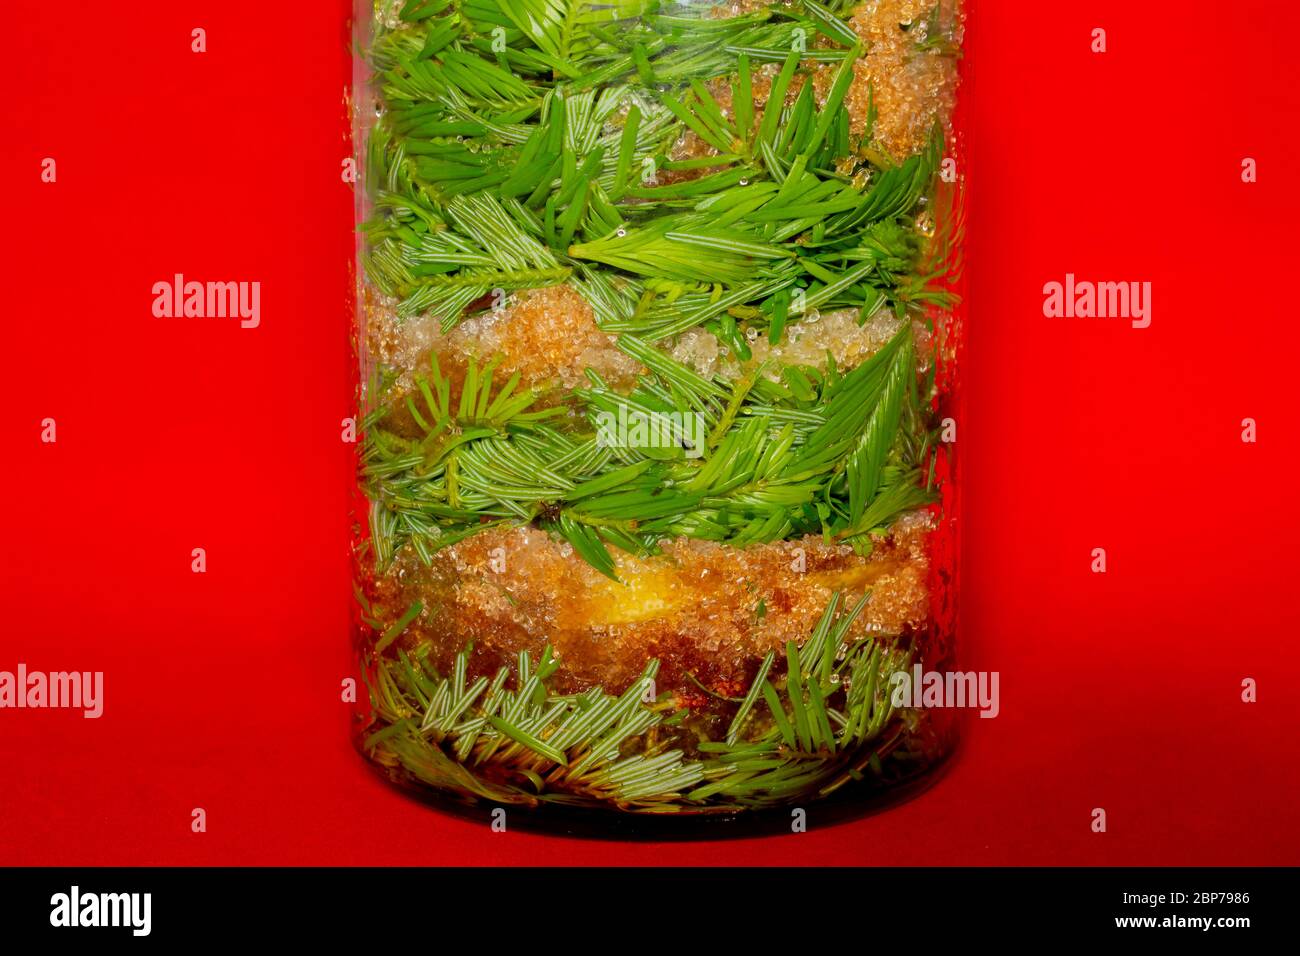 Jarra de vidrio con brotes de abeto y picea y azúcar morena para hacer jarabe natural para la tos Foto de stock